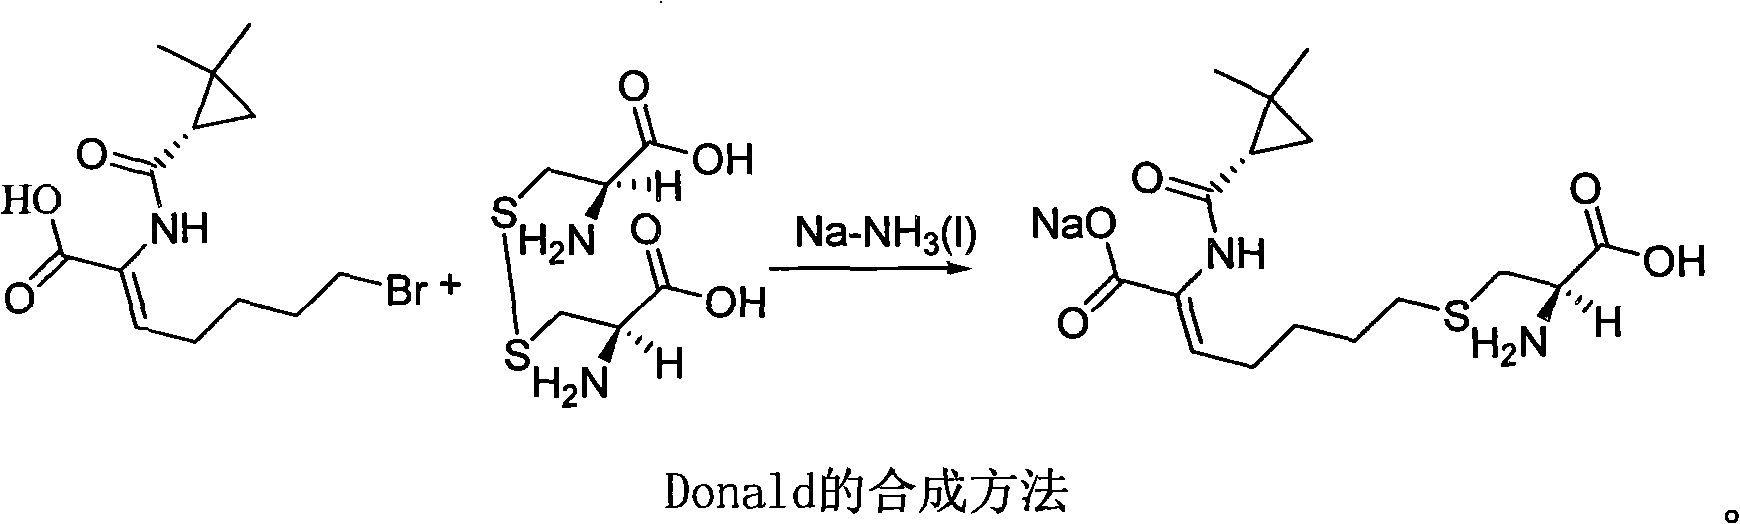 Method for synthesizing cilastatin sodium